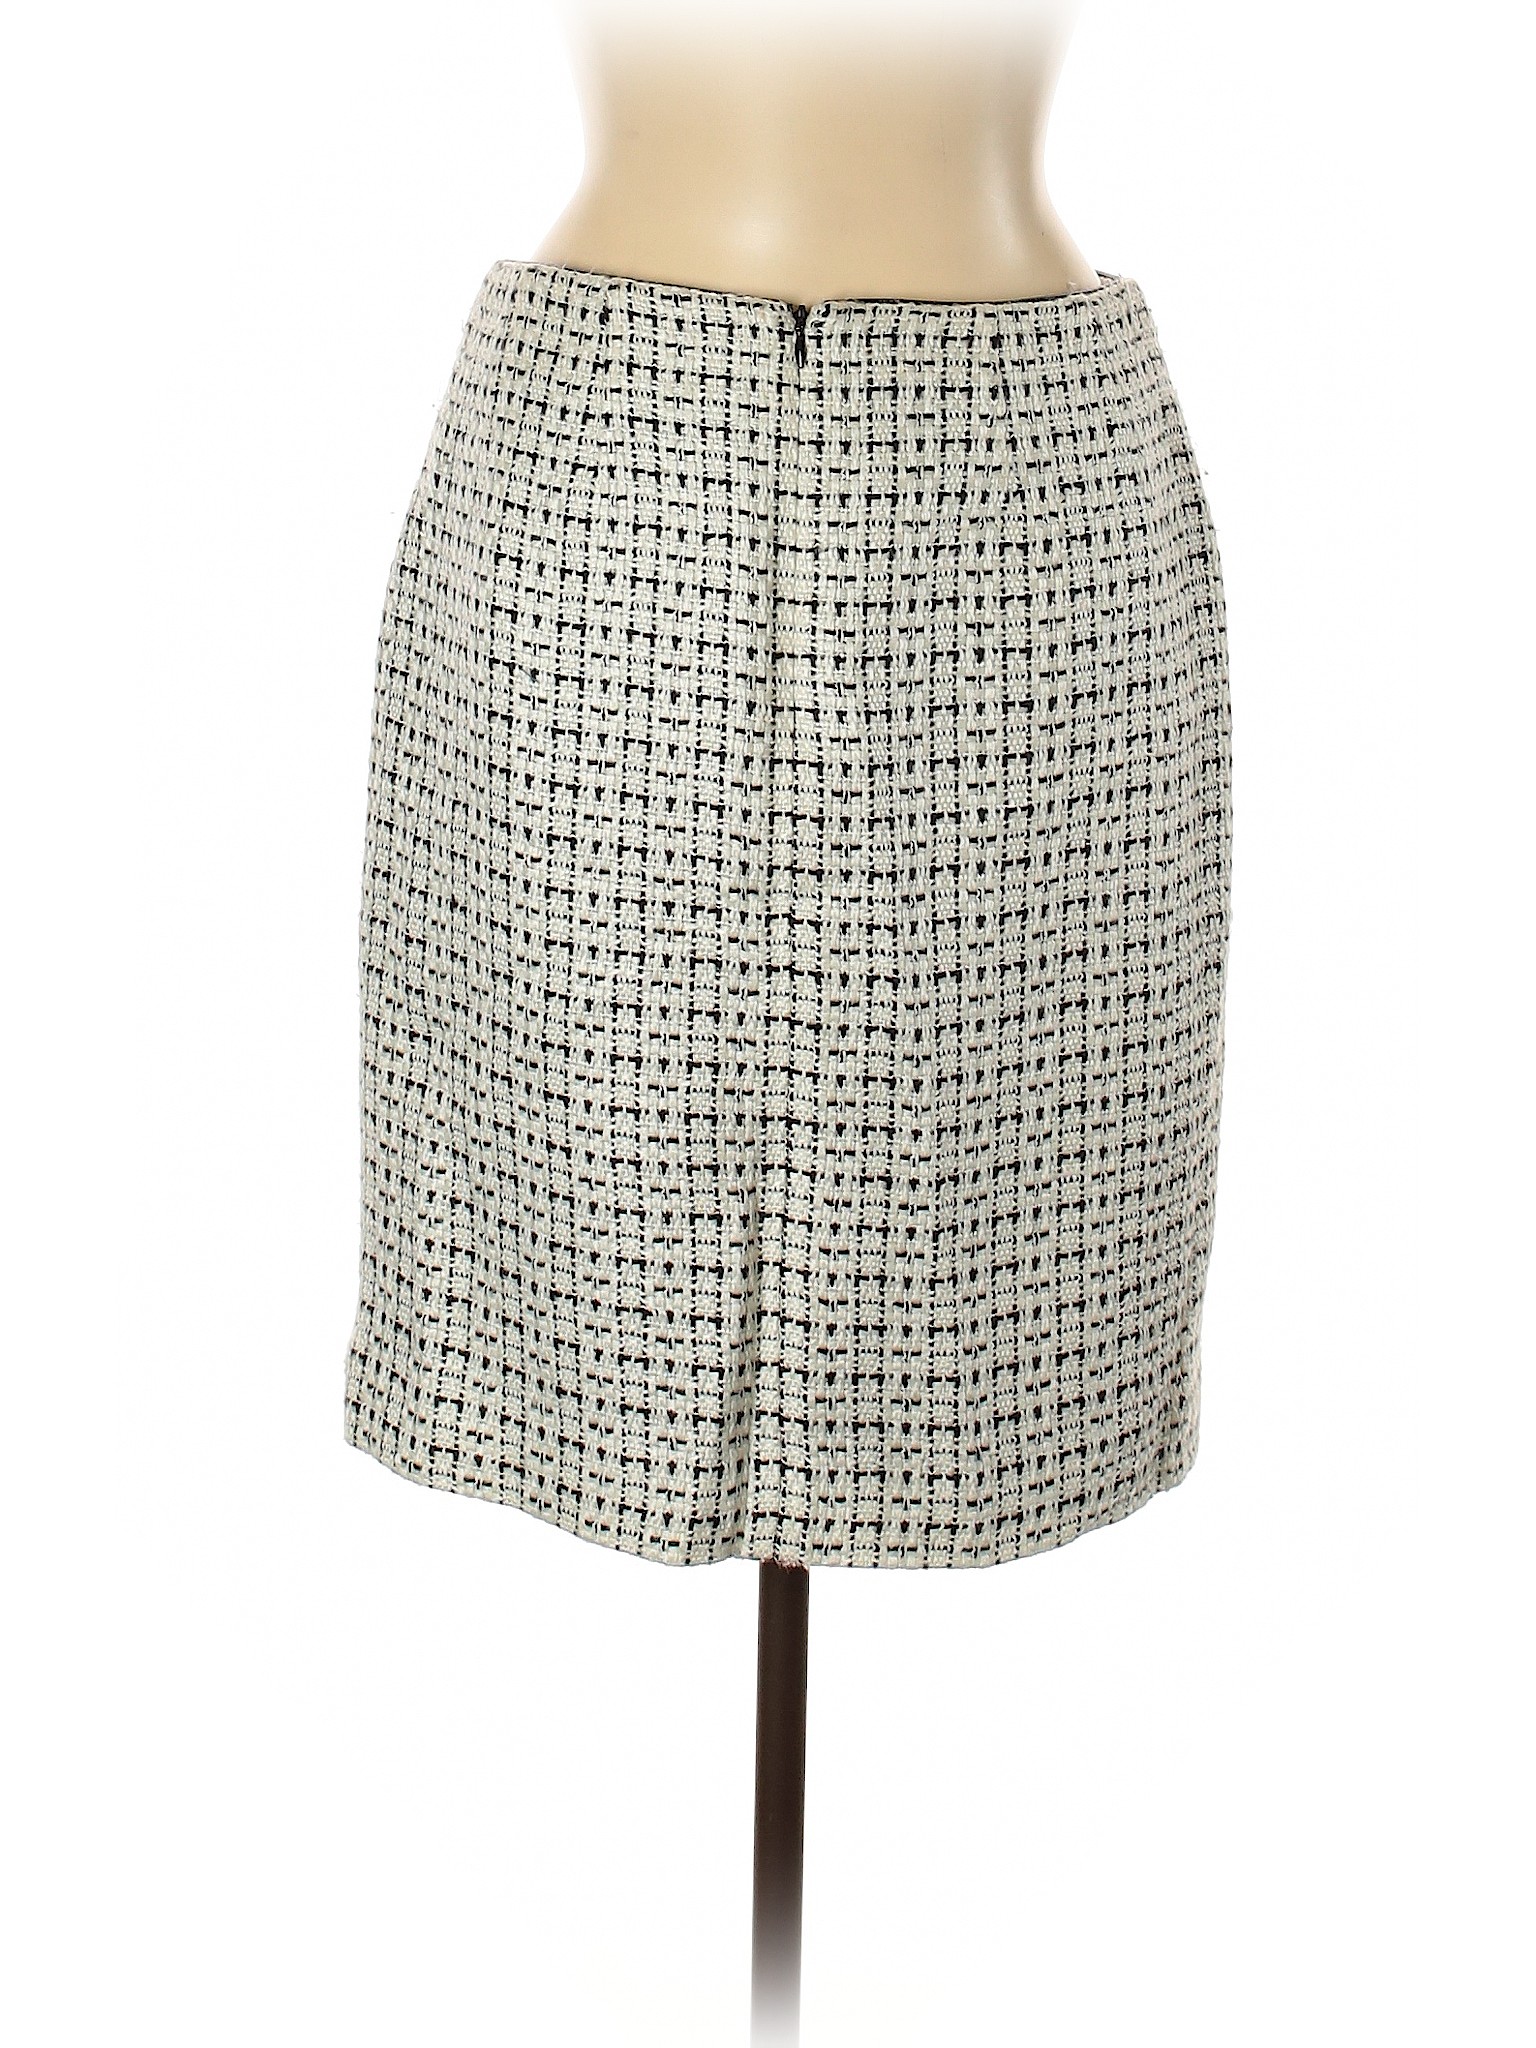 Unbranded Women Ivory Casual Skirt 6 | eBay